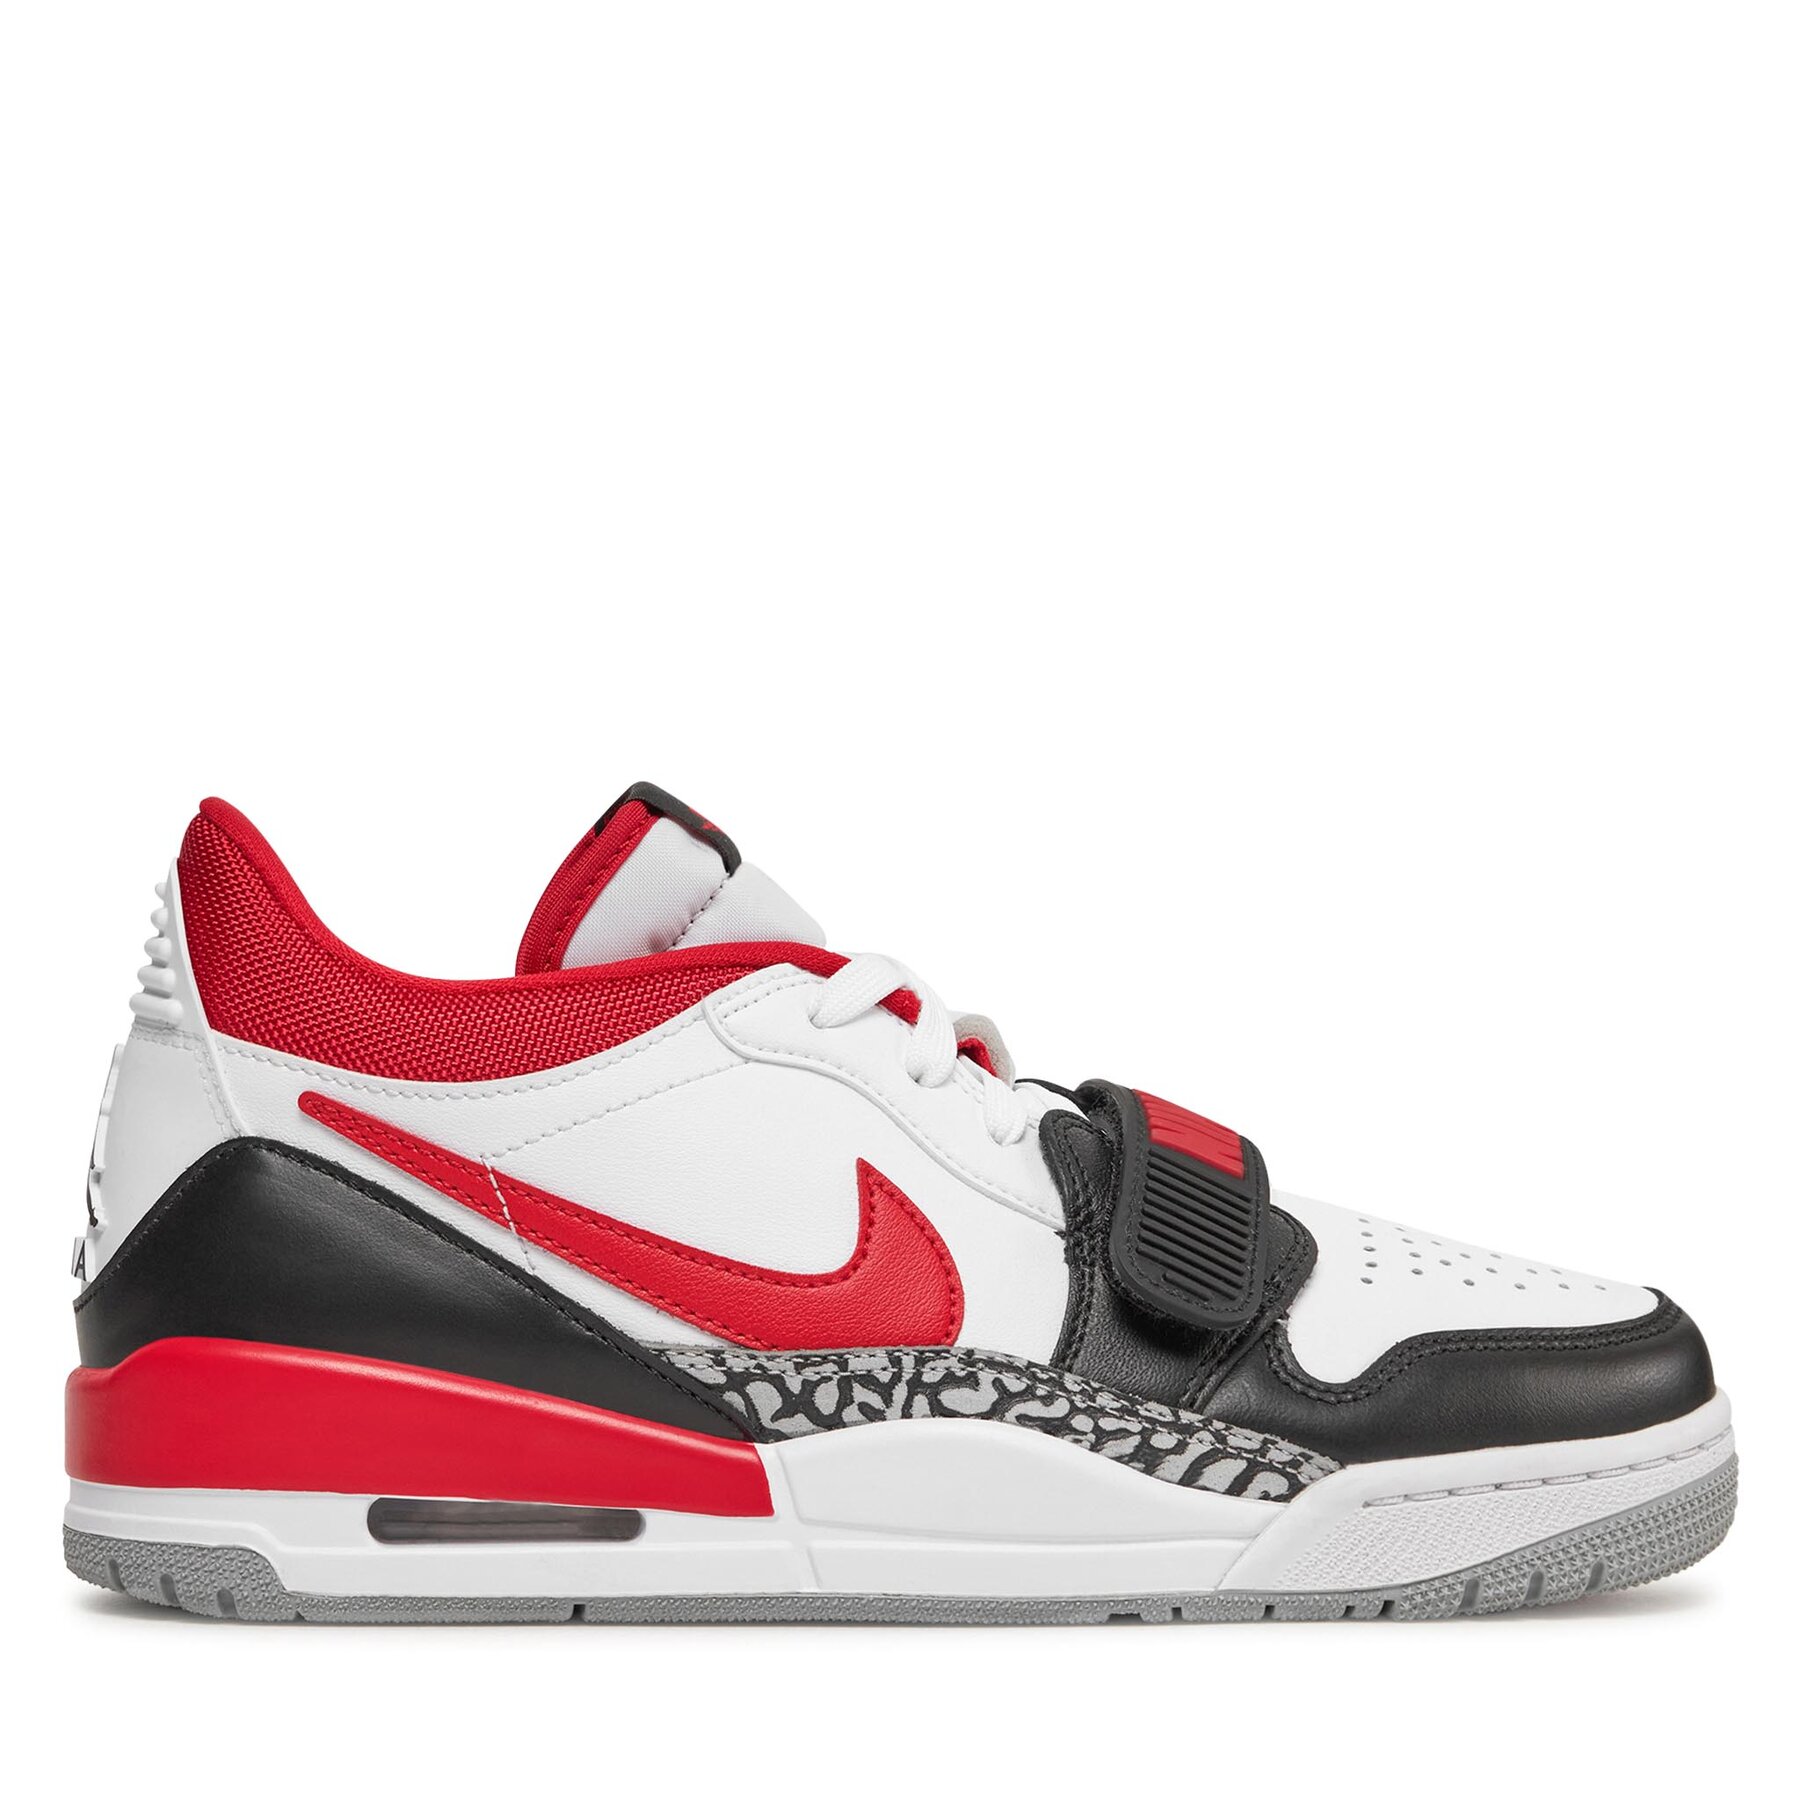 Jordan Legacy 312 Low Men's Shoe white - Zapatillas de baloncesto